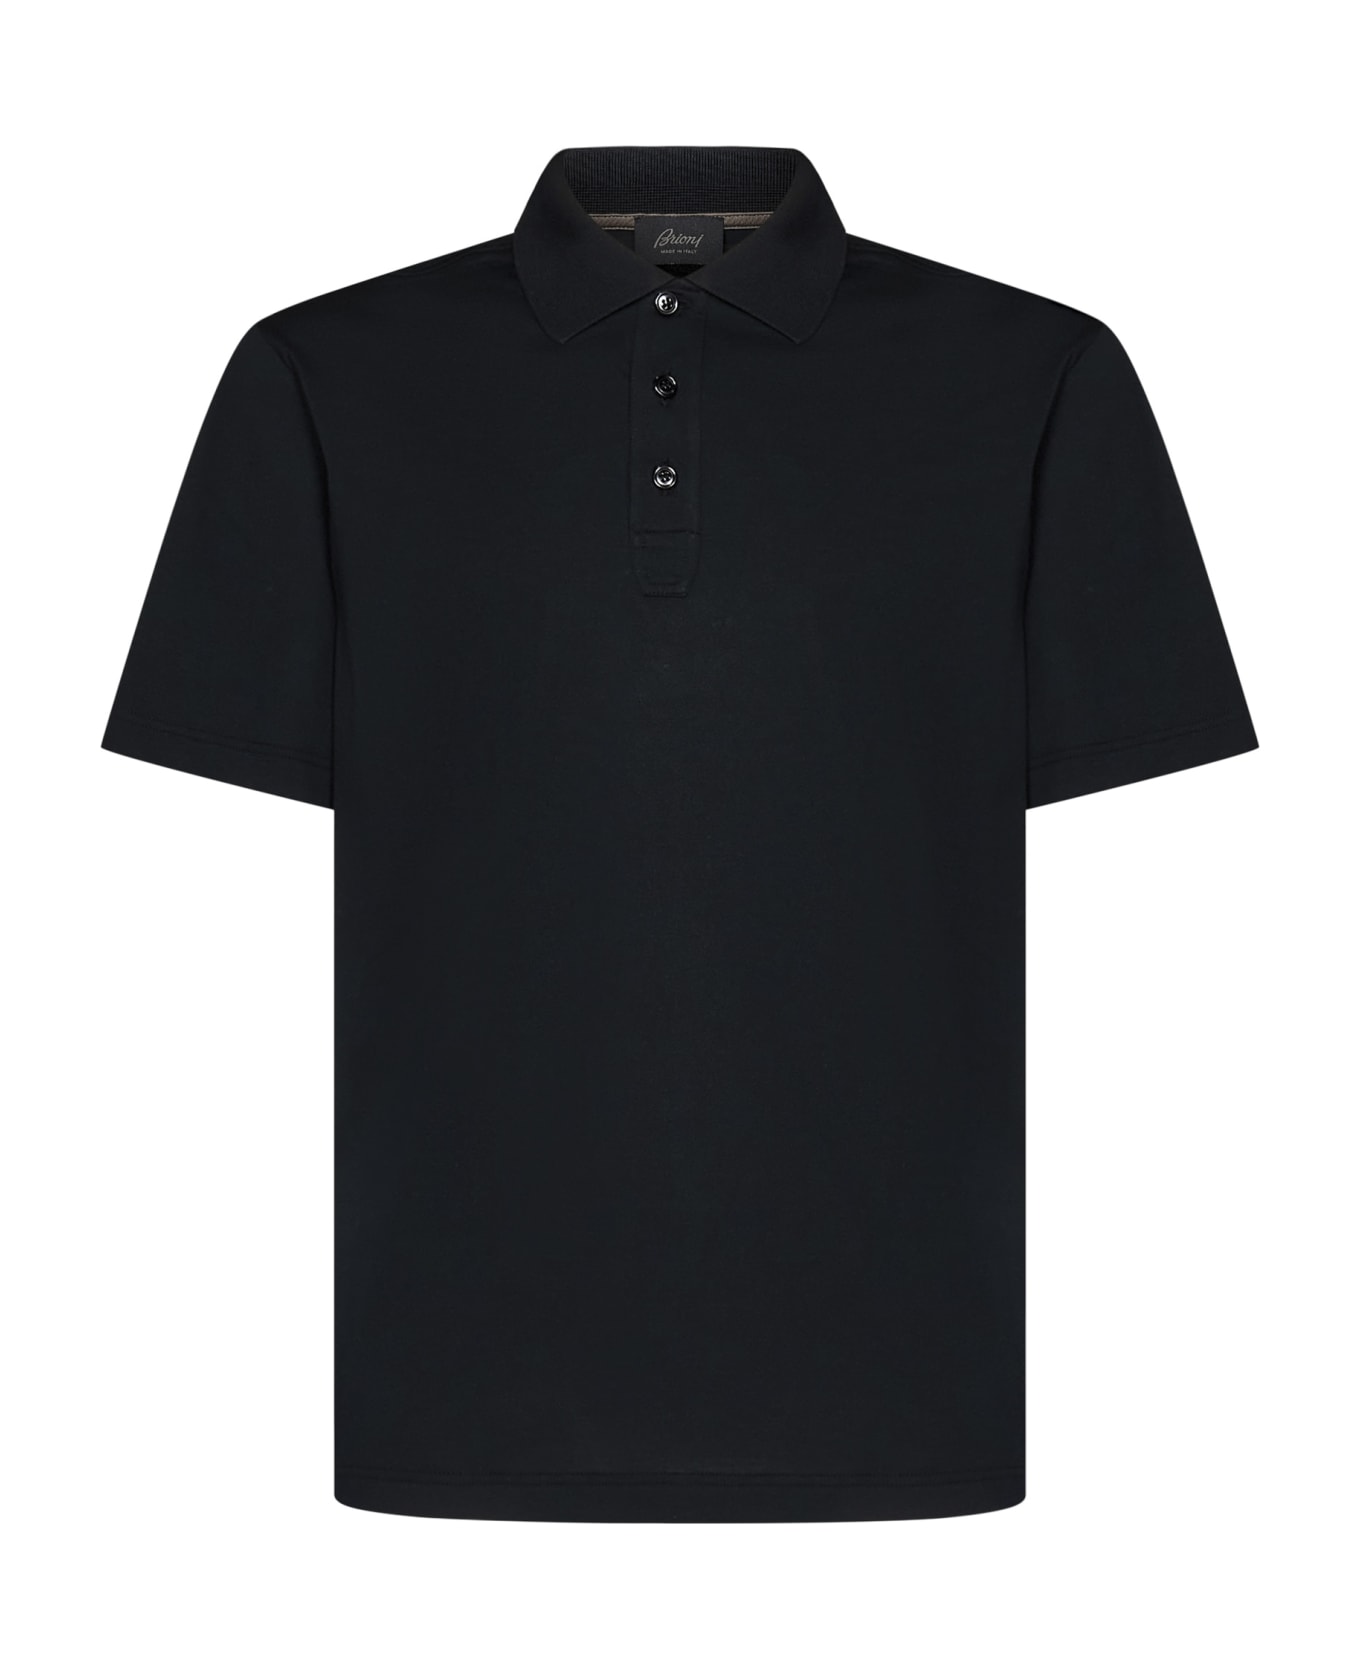 Brioni Polo Shirt - Black ポロシャツ